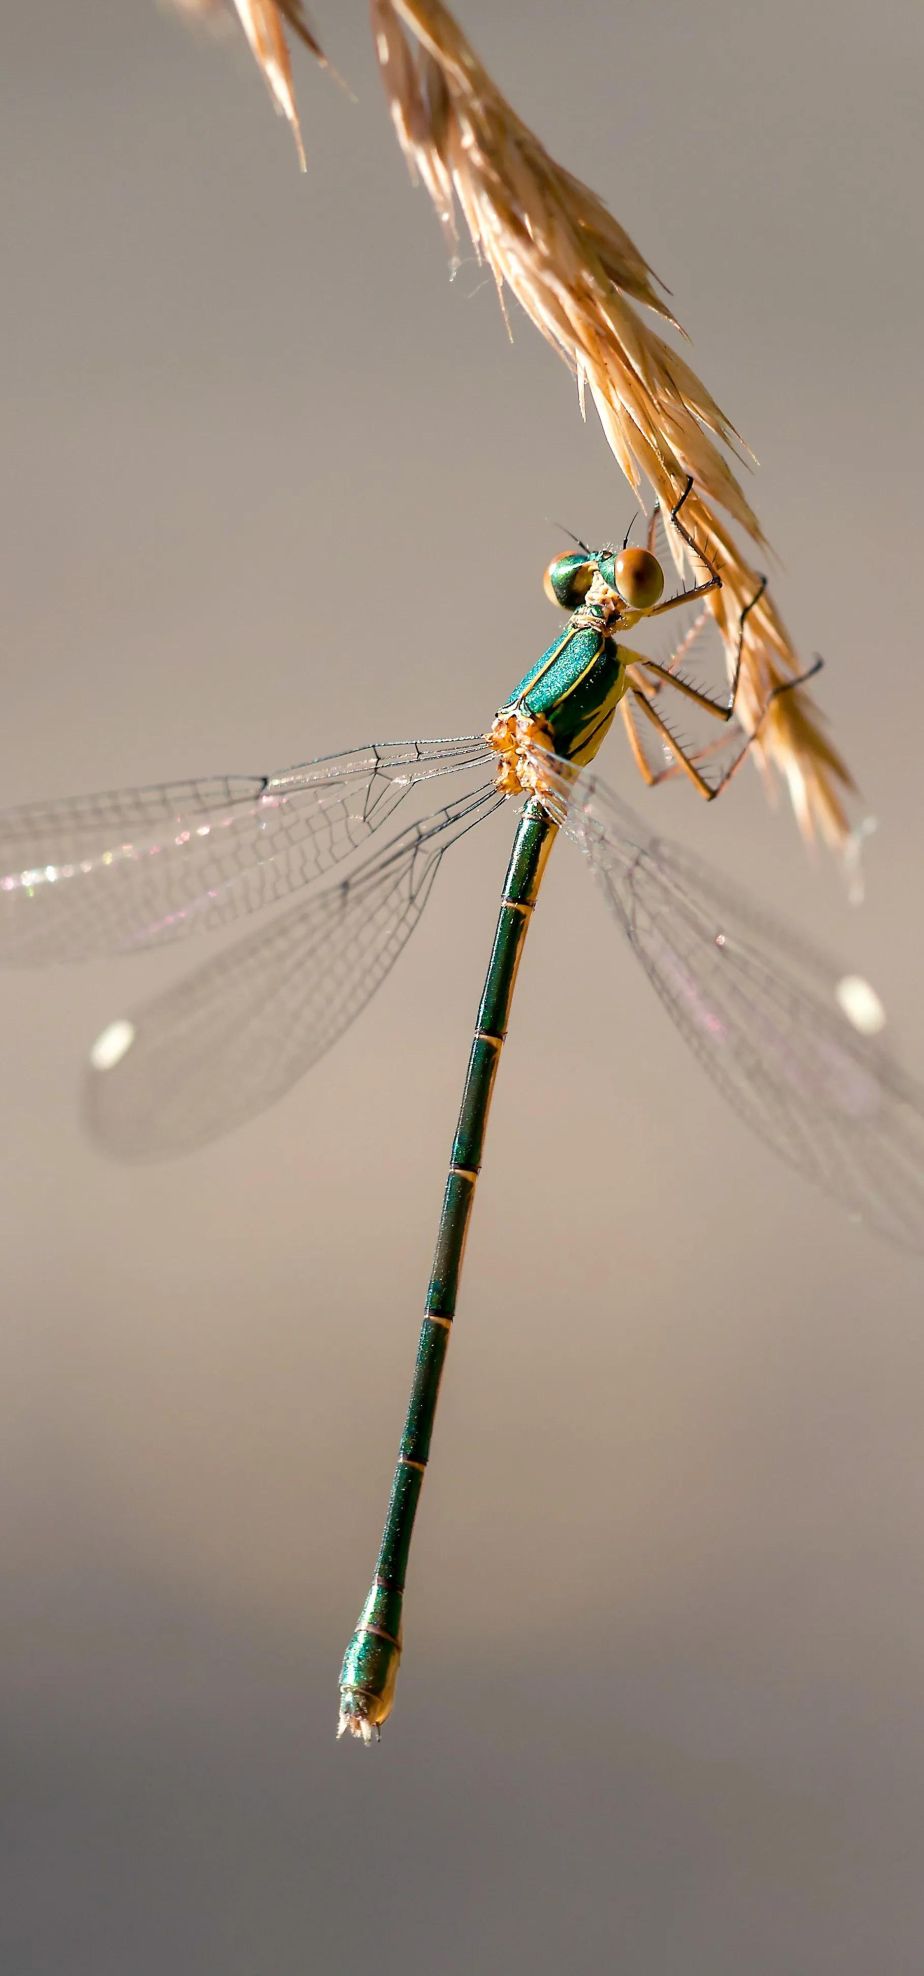 神奇昆虫的秘密世界：微距下的昆虫摄影艺术